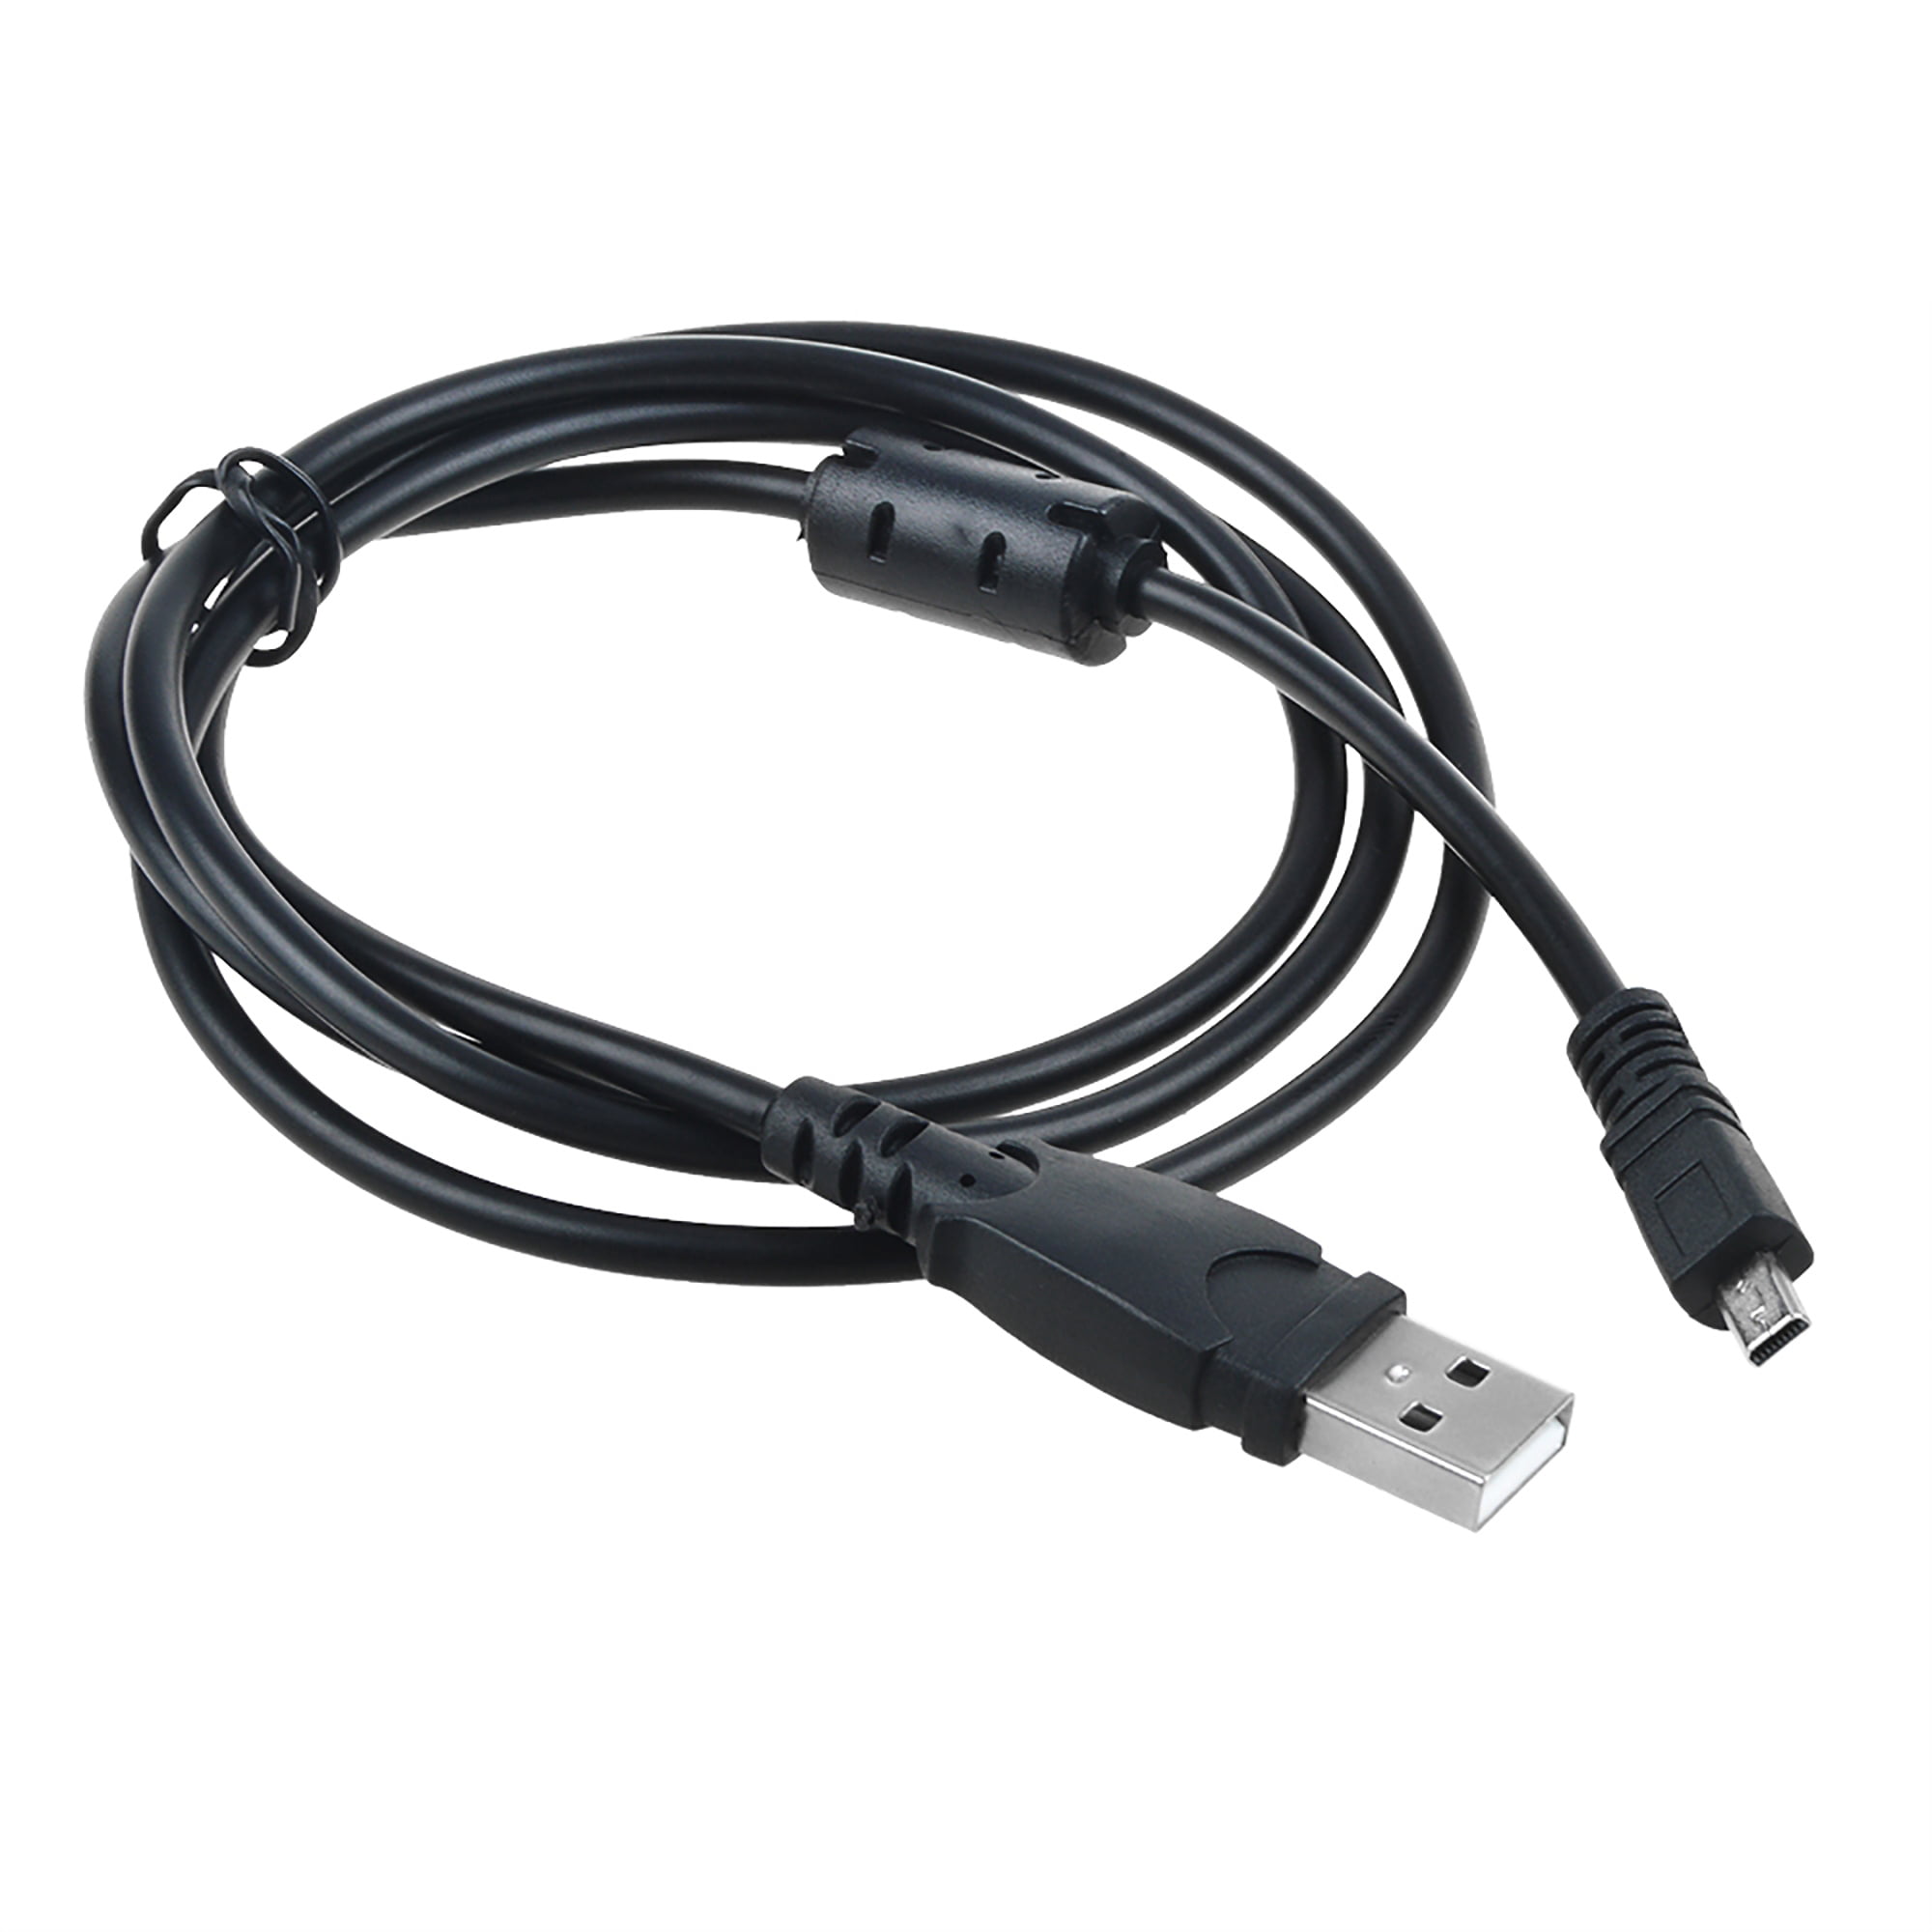 PKPOWER USB Cable/Cord For Fuji FujiFilm Finepix F31 fd Z70 Camera